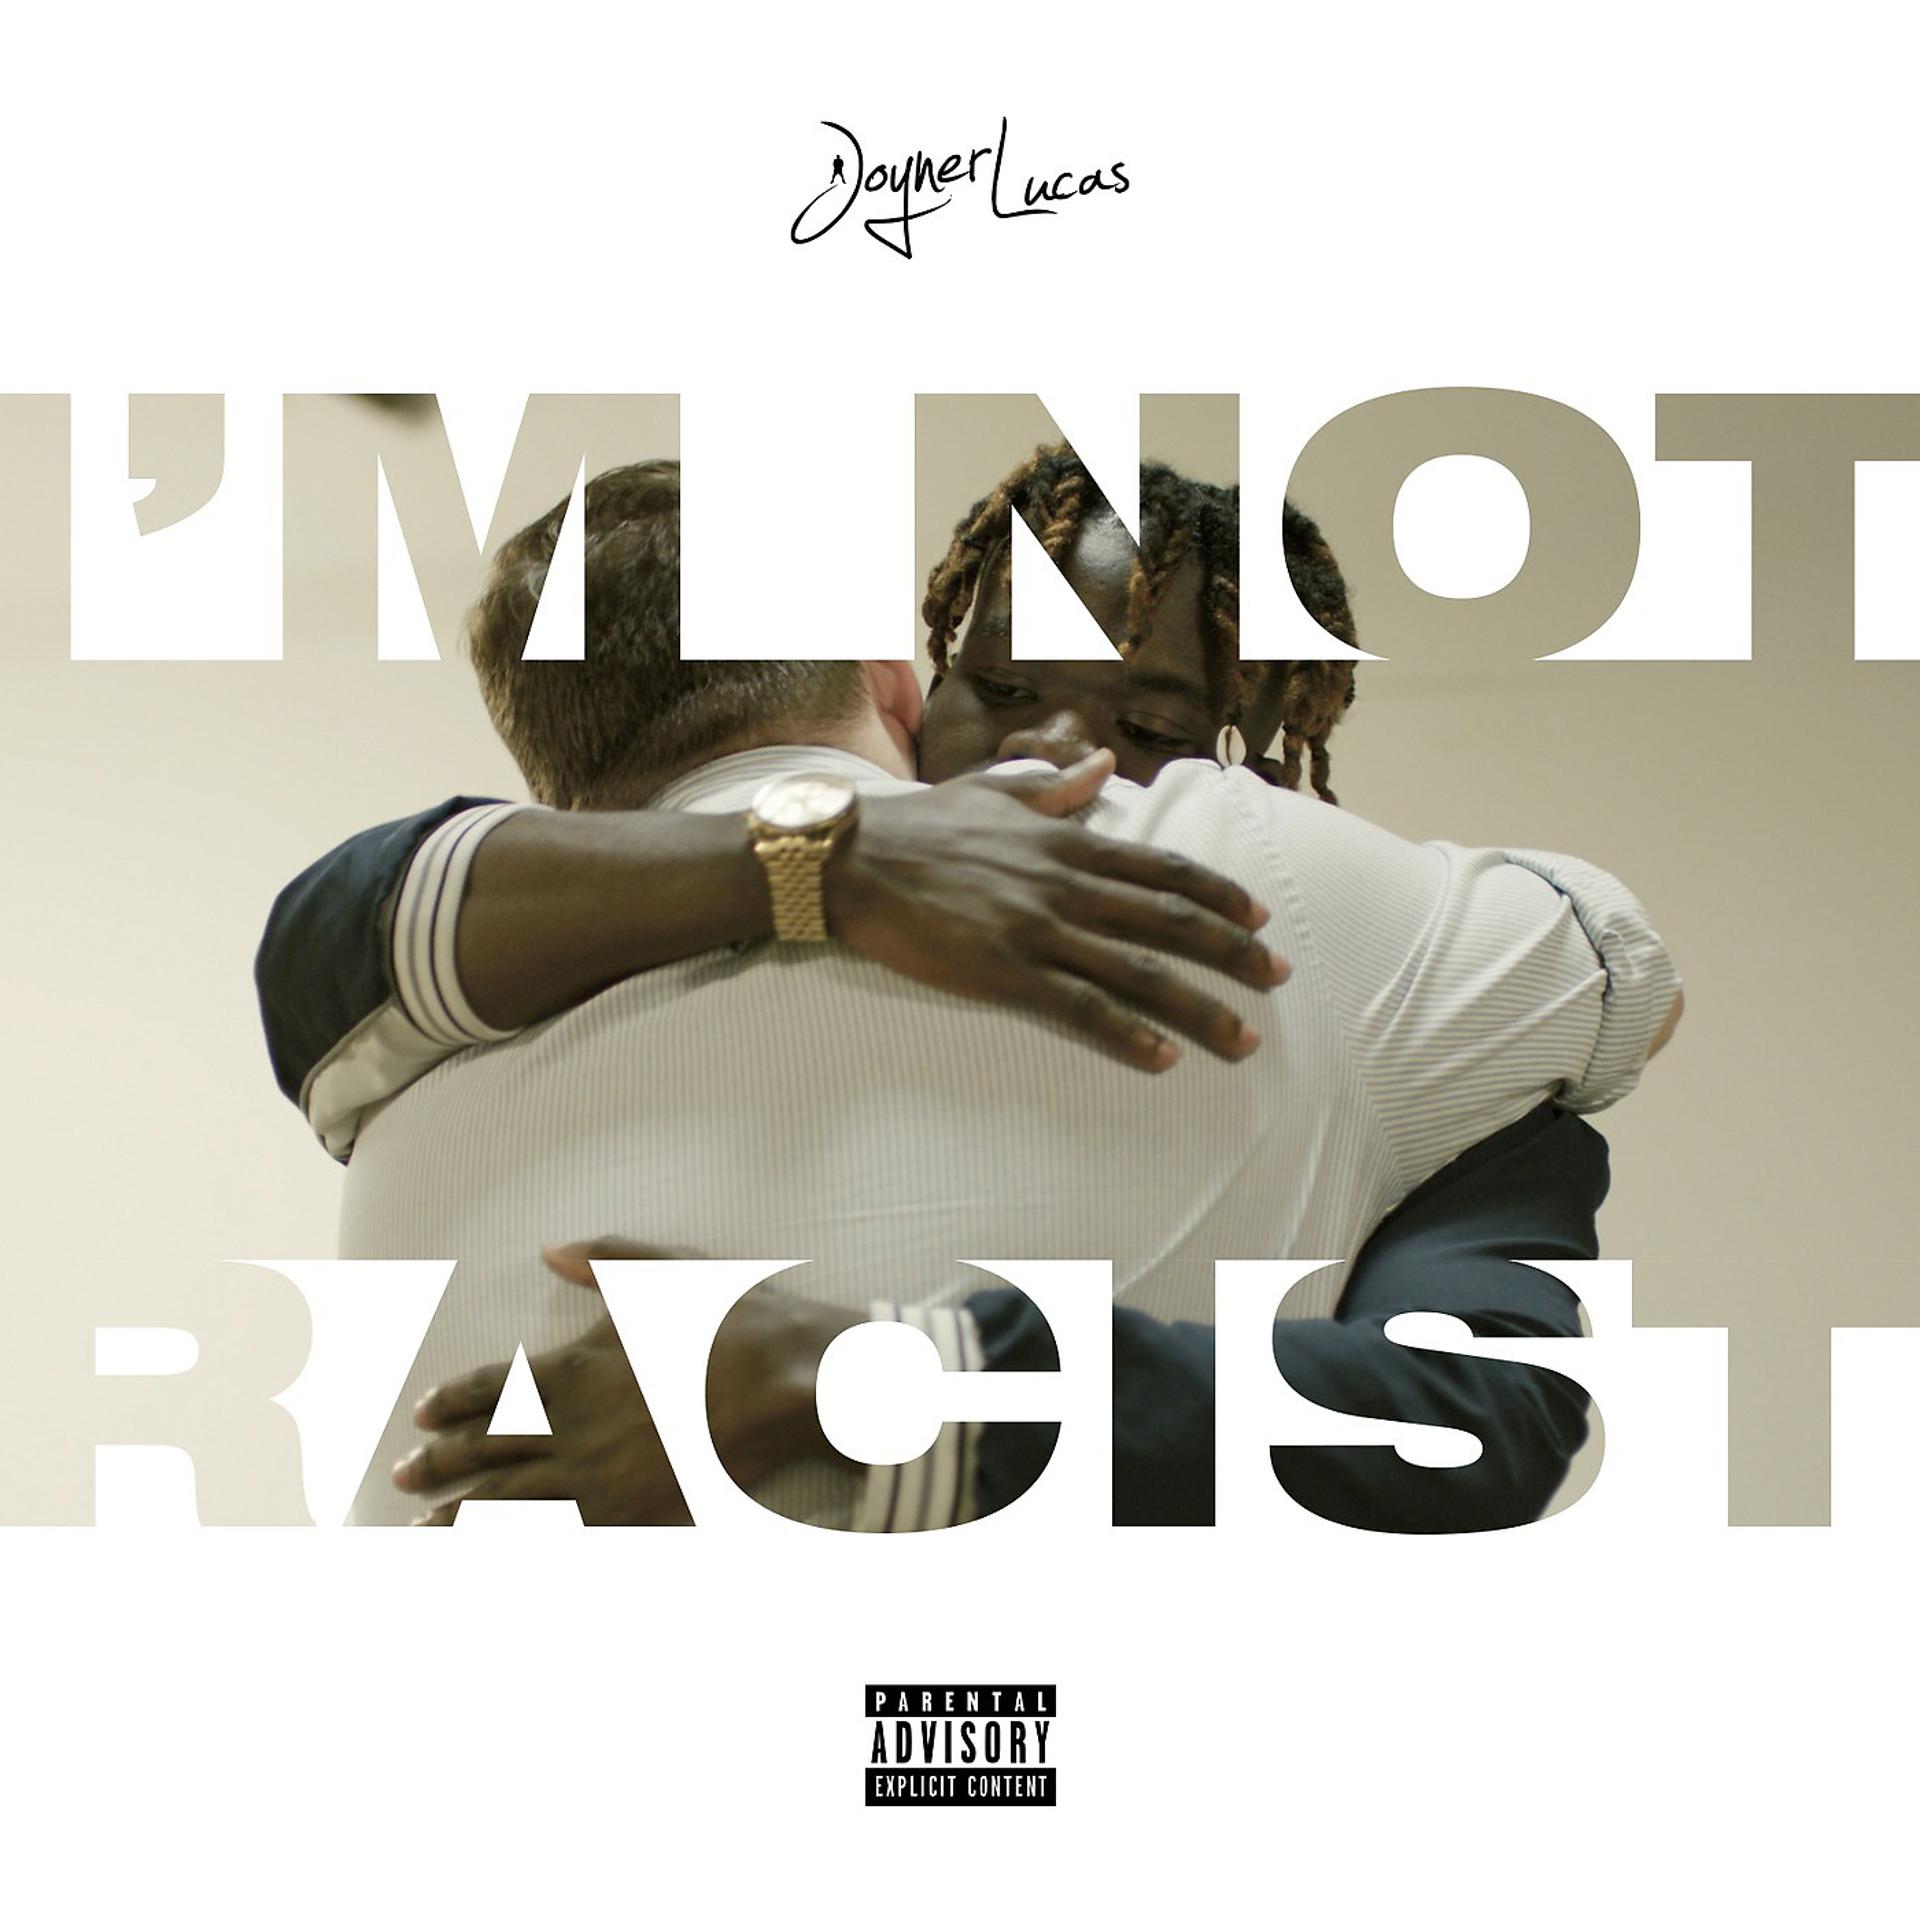 Постер альбома I'm Not Racist